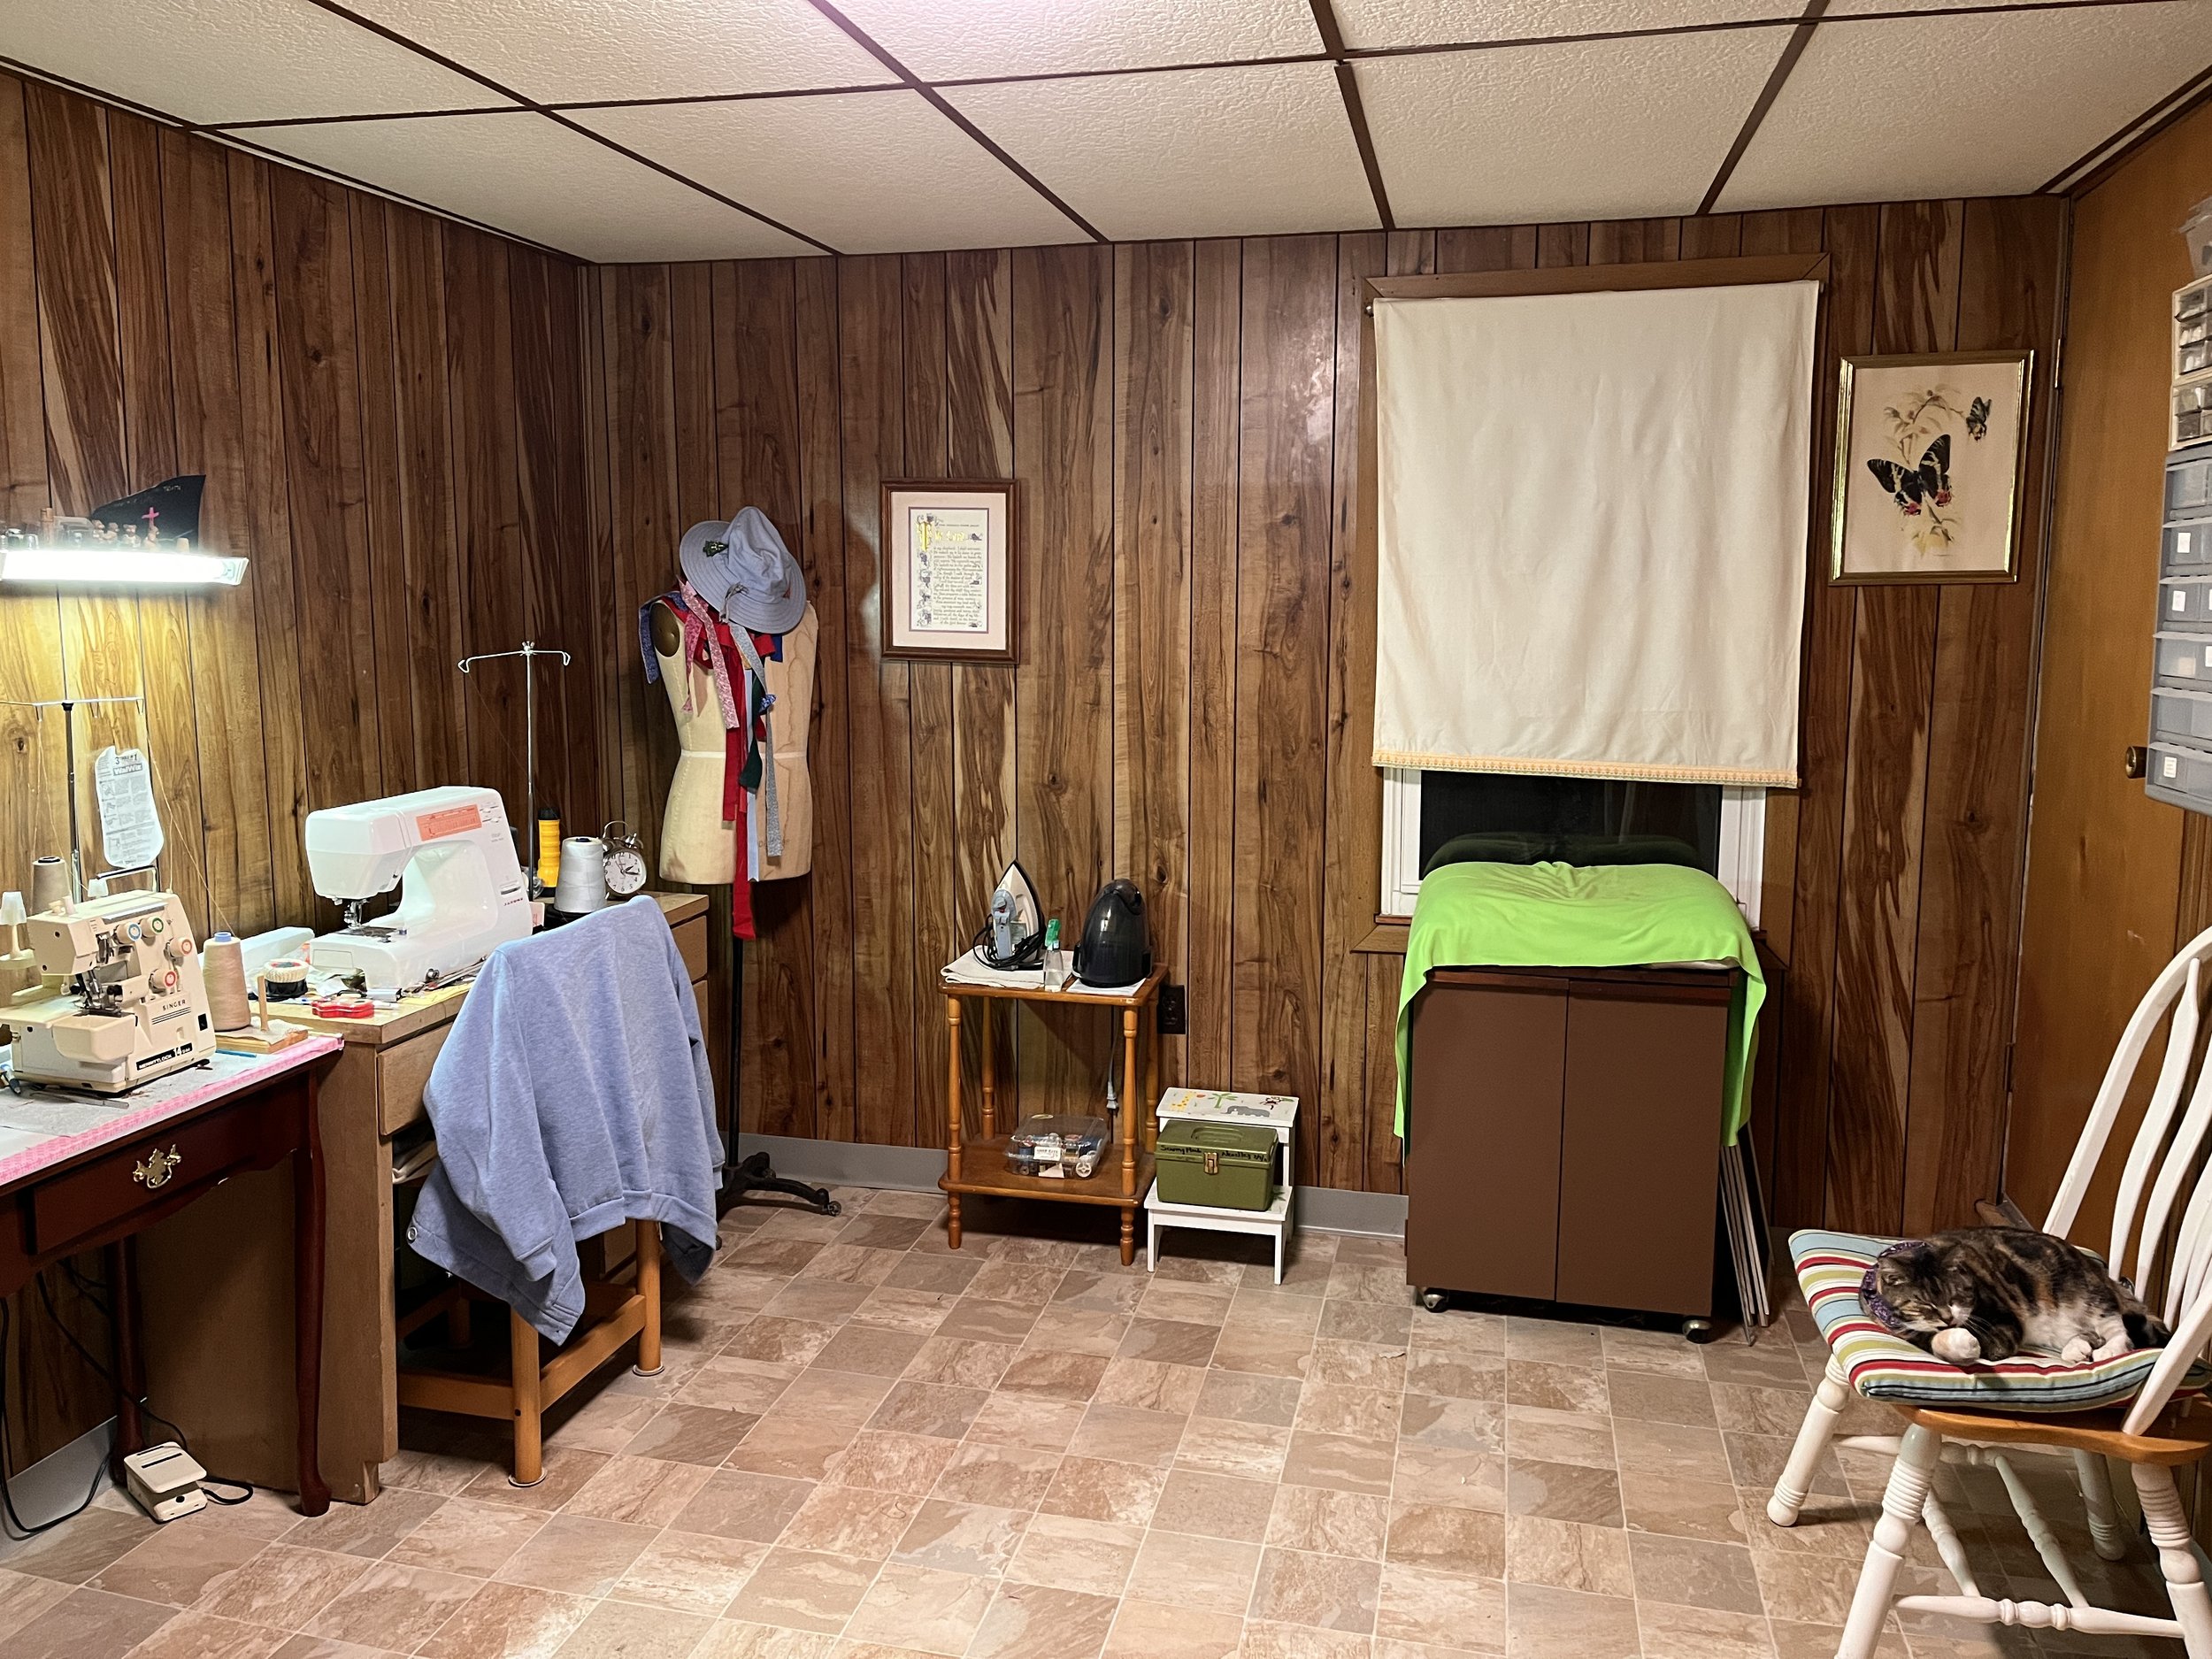 Gramling Sewing room - After.jpg